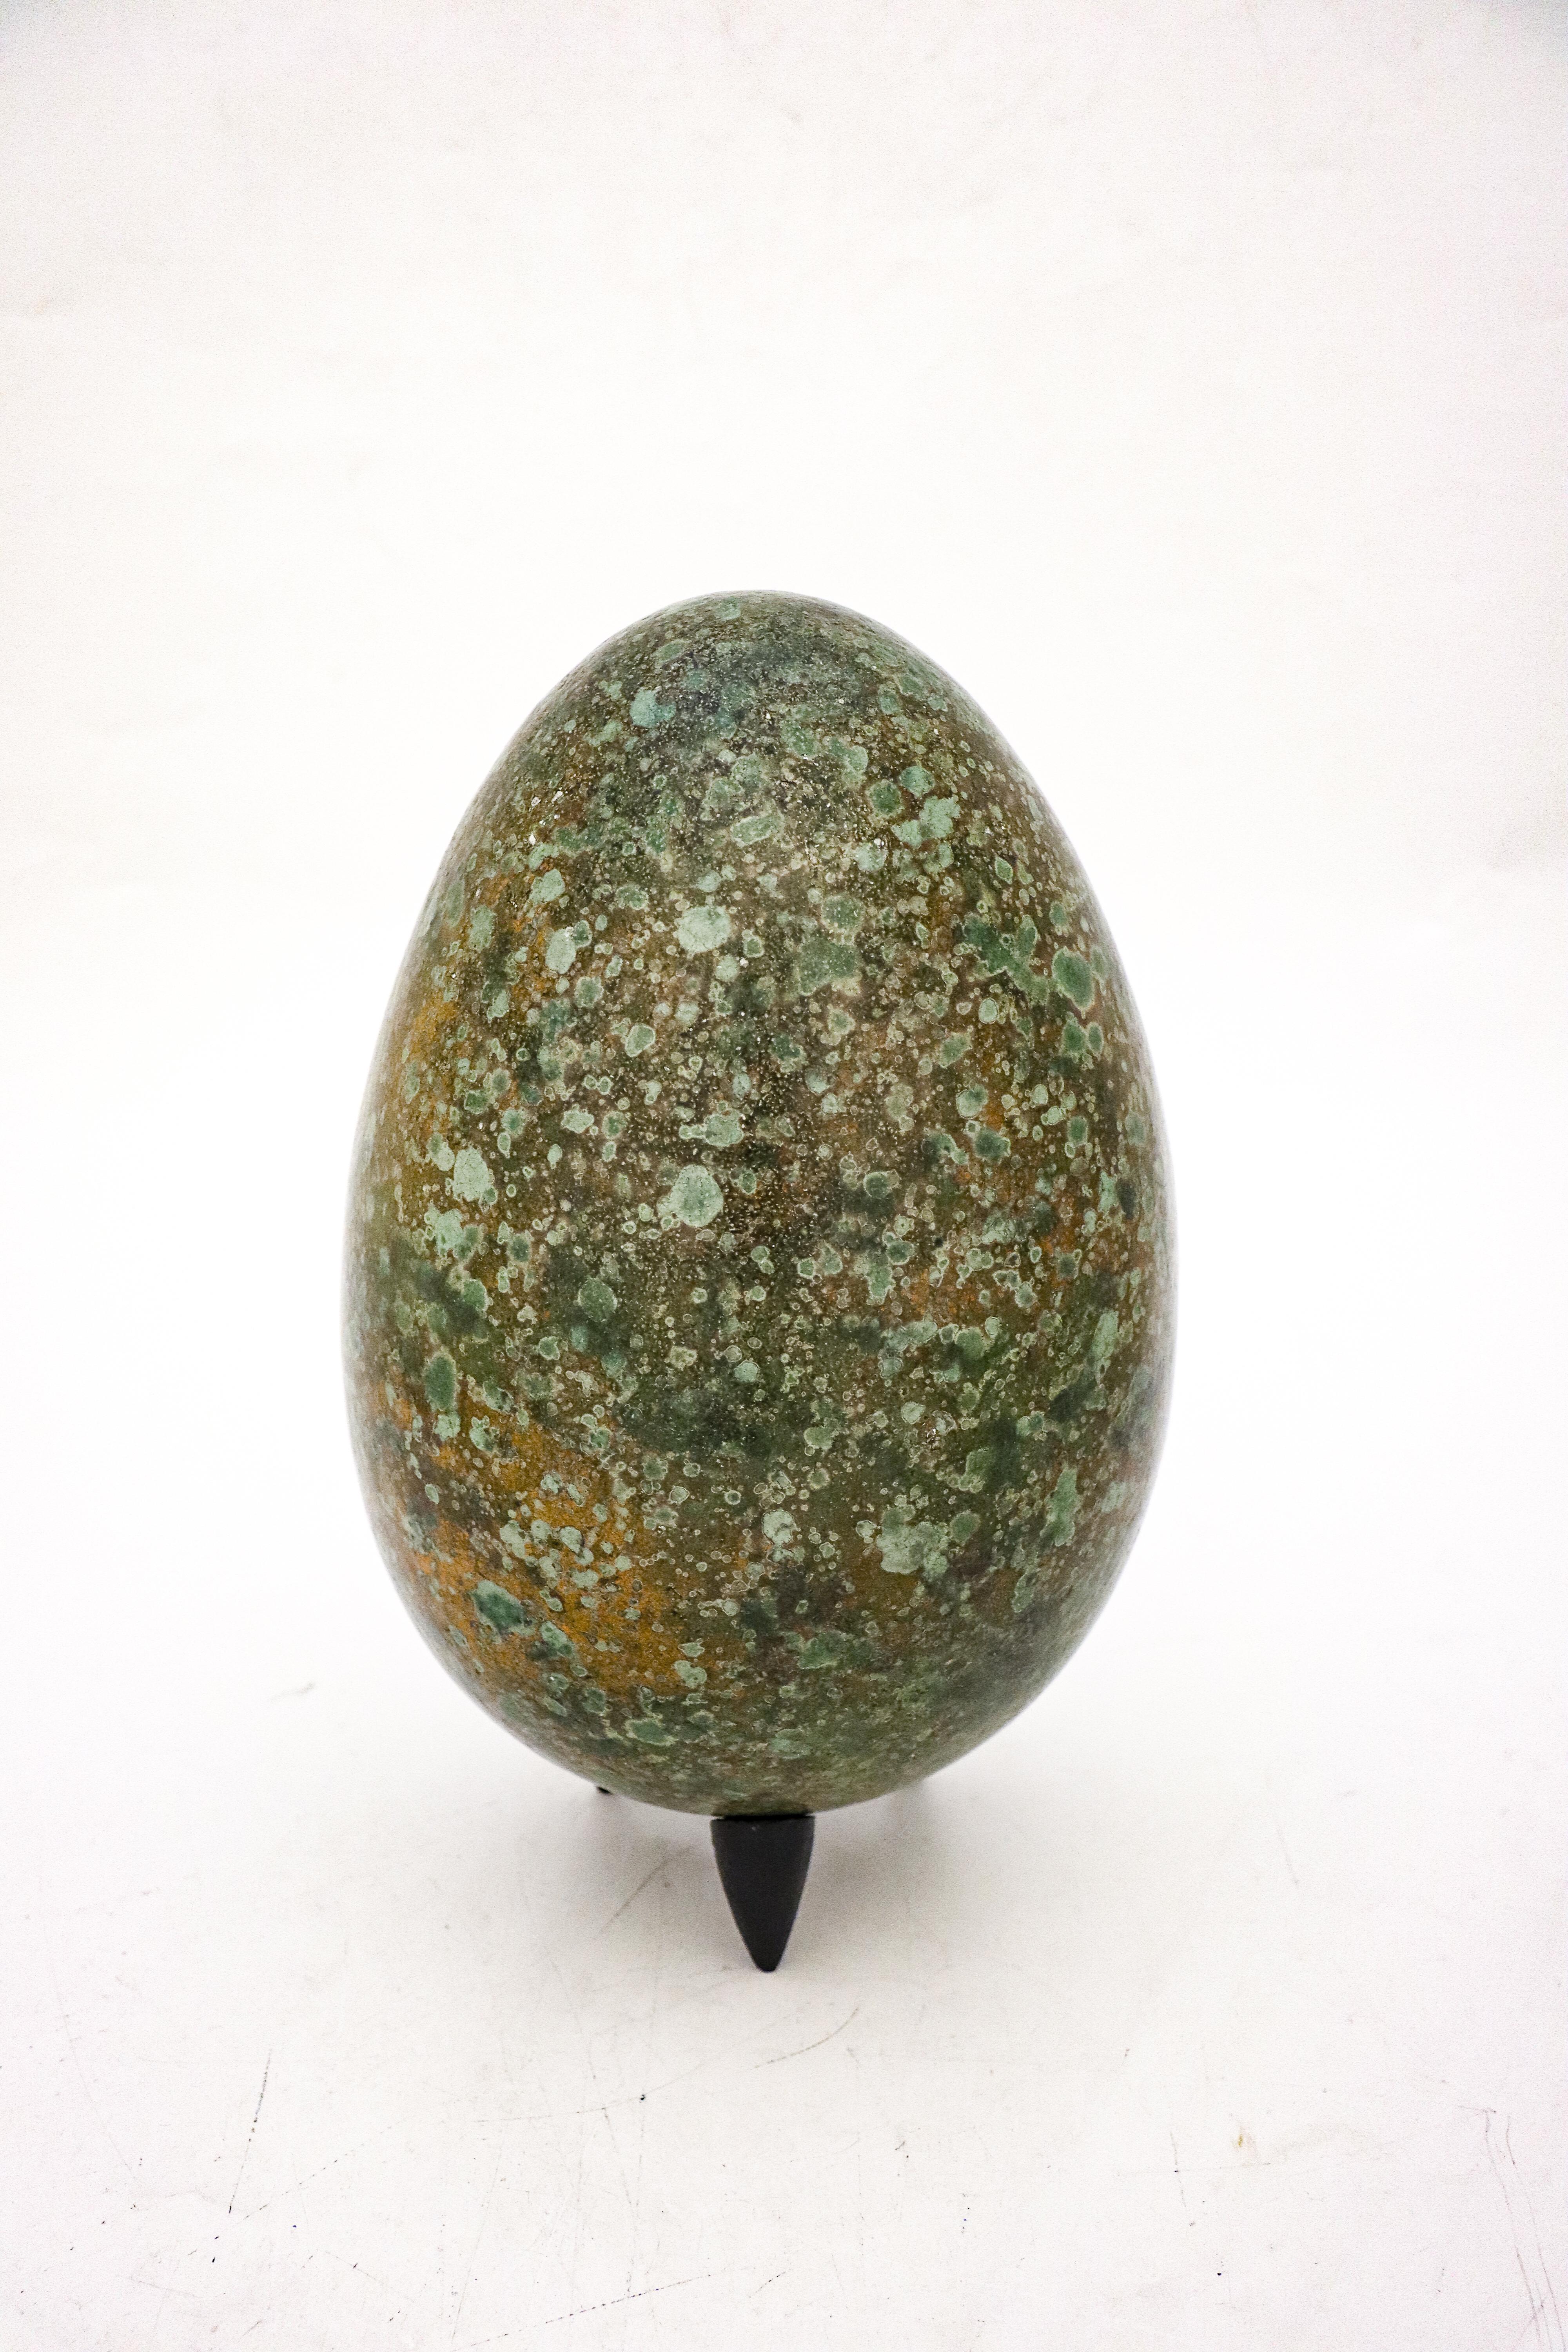 Das Ei wurde von dem schwedischen Keramiker Hans Hedberg entworfen, der in Biot, Frankreich, lebte und arbeitete. Dieses Ei ist 30 cm (12